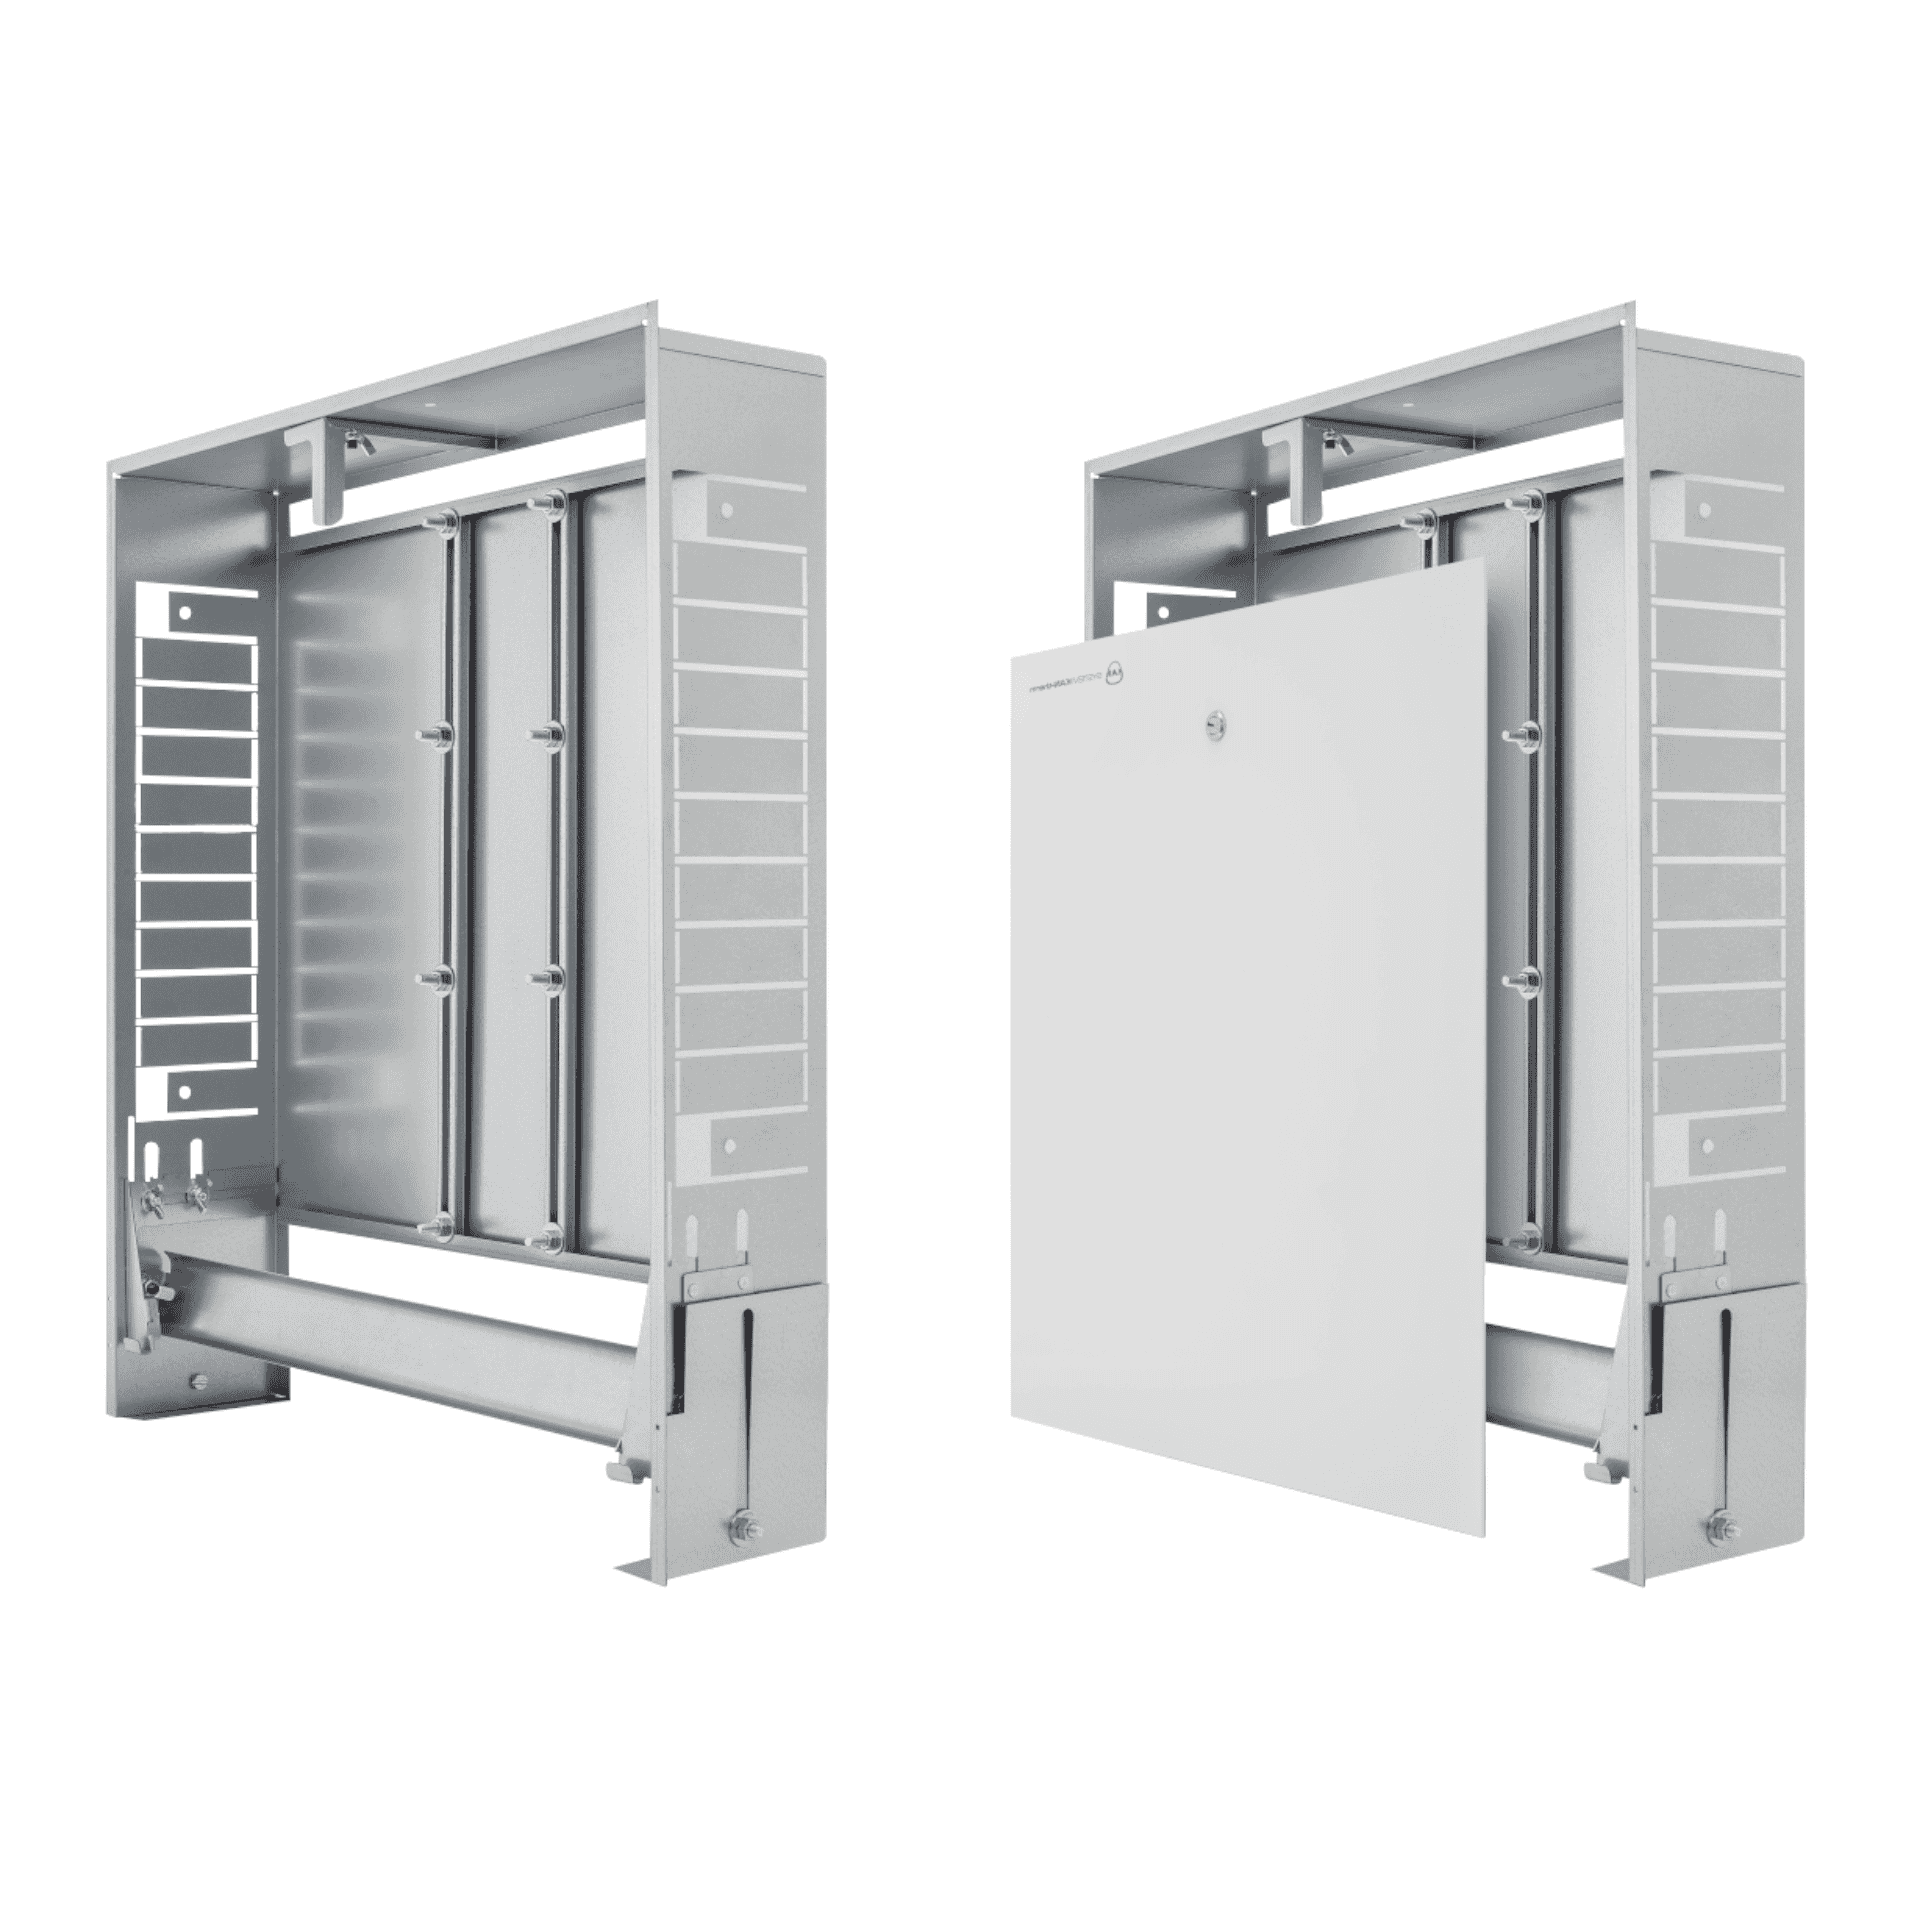 KAN-therm - Szafki instalacyjne Slim i Slim+ - Konstrukcja szafek instalacyjnych